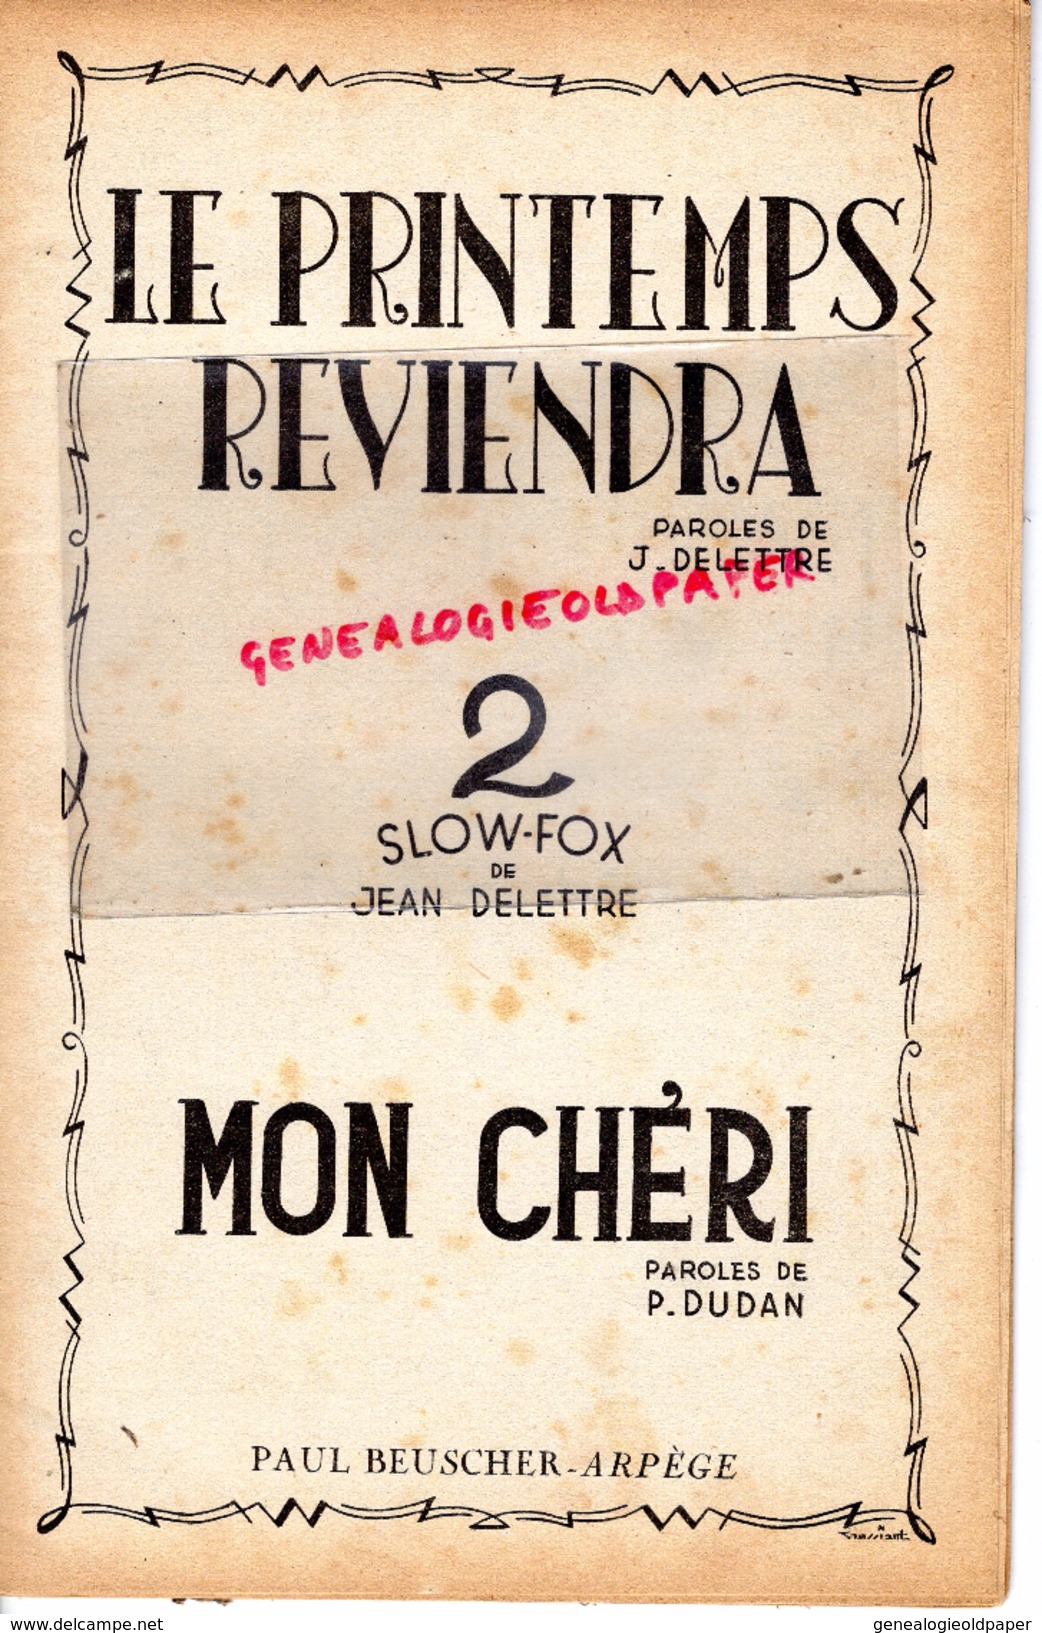 PARTITION MUSICALE-LE PRINTEMPS REVIENDRA- J.DELETTRE-SLOW FOX -MON CHERI-P.DUDAN-PAUL BEUSCHER PARIS 1950 - Partitions Musicales Anciennes